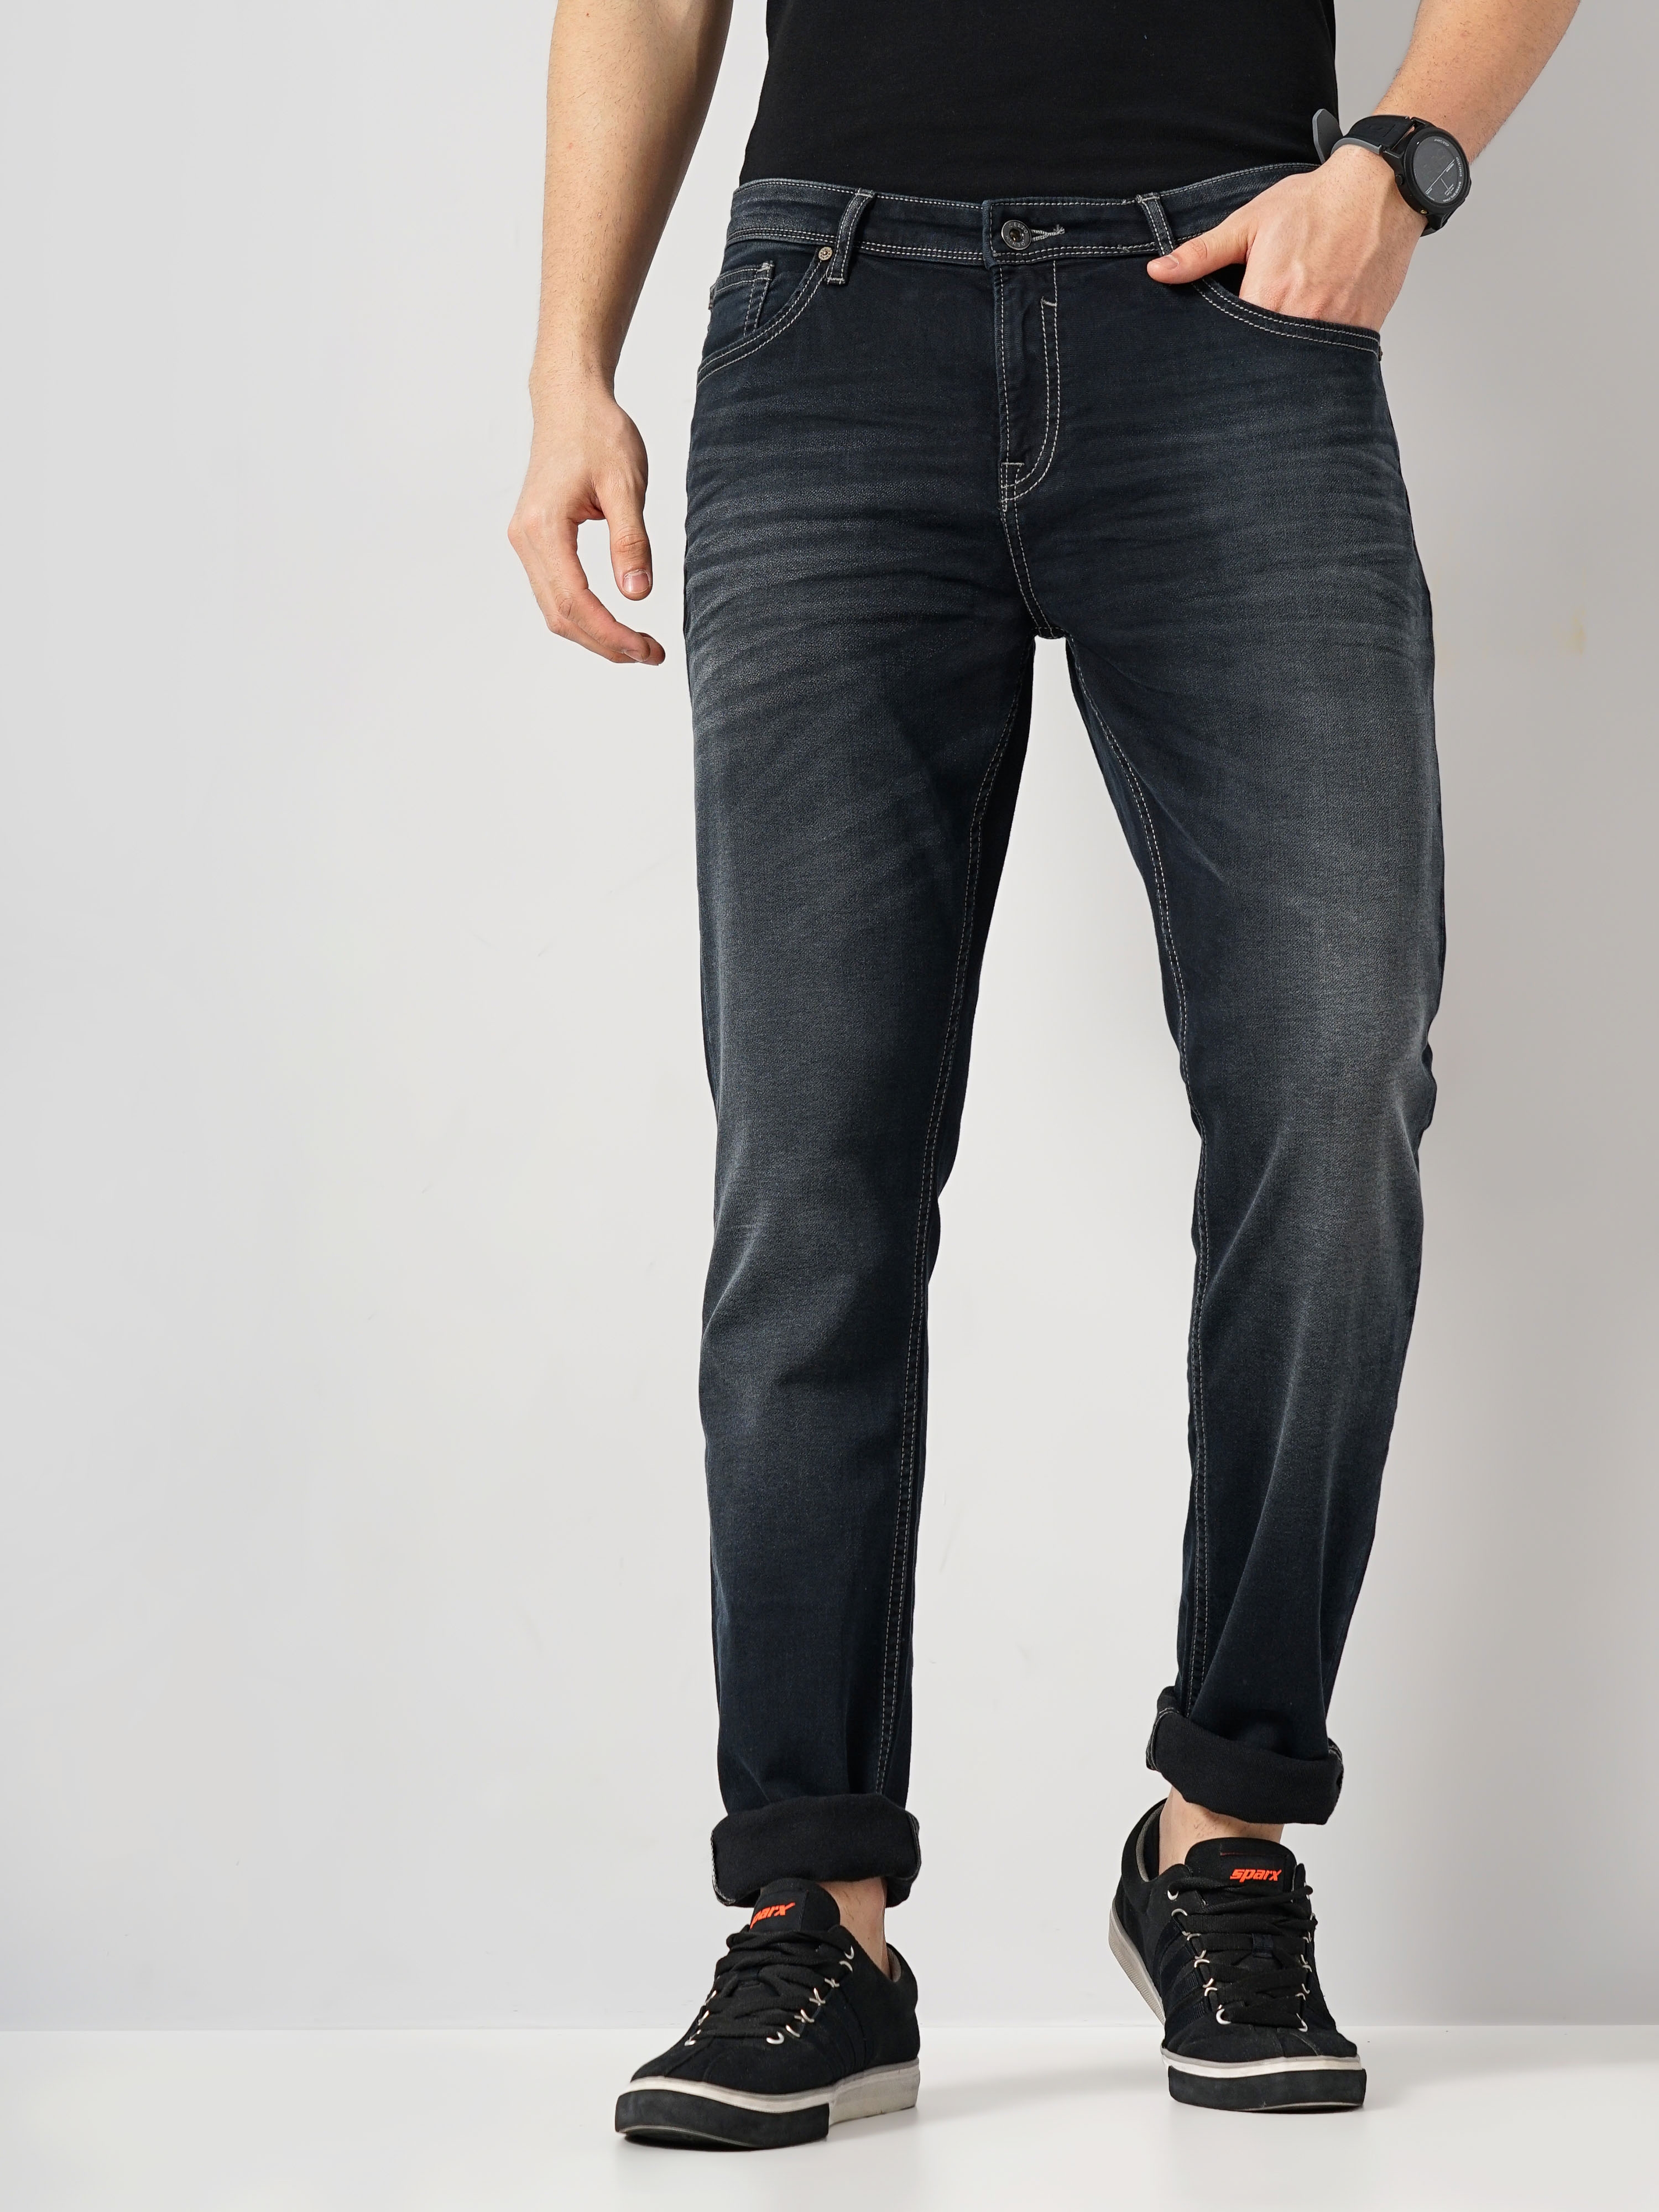 Celio Men's Solid Knit Denim Jeans